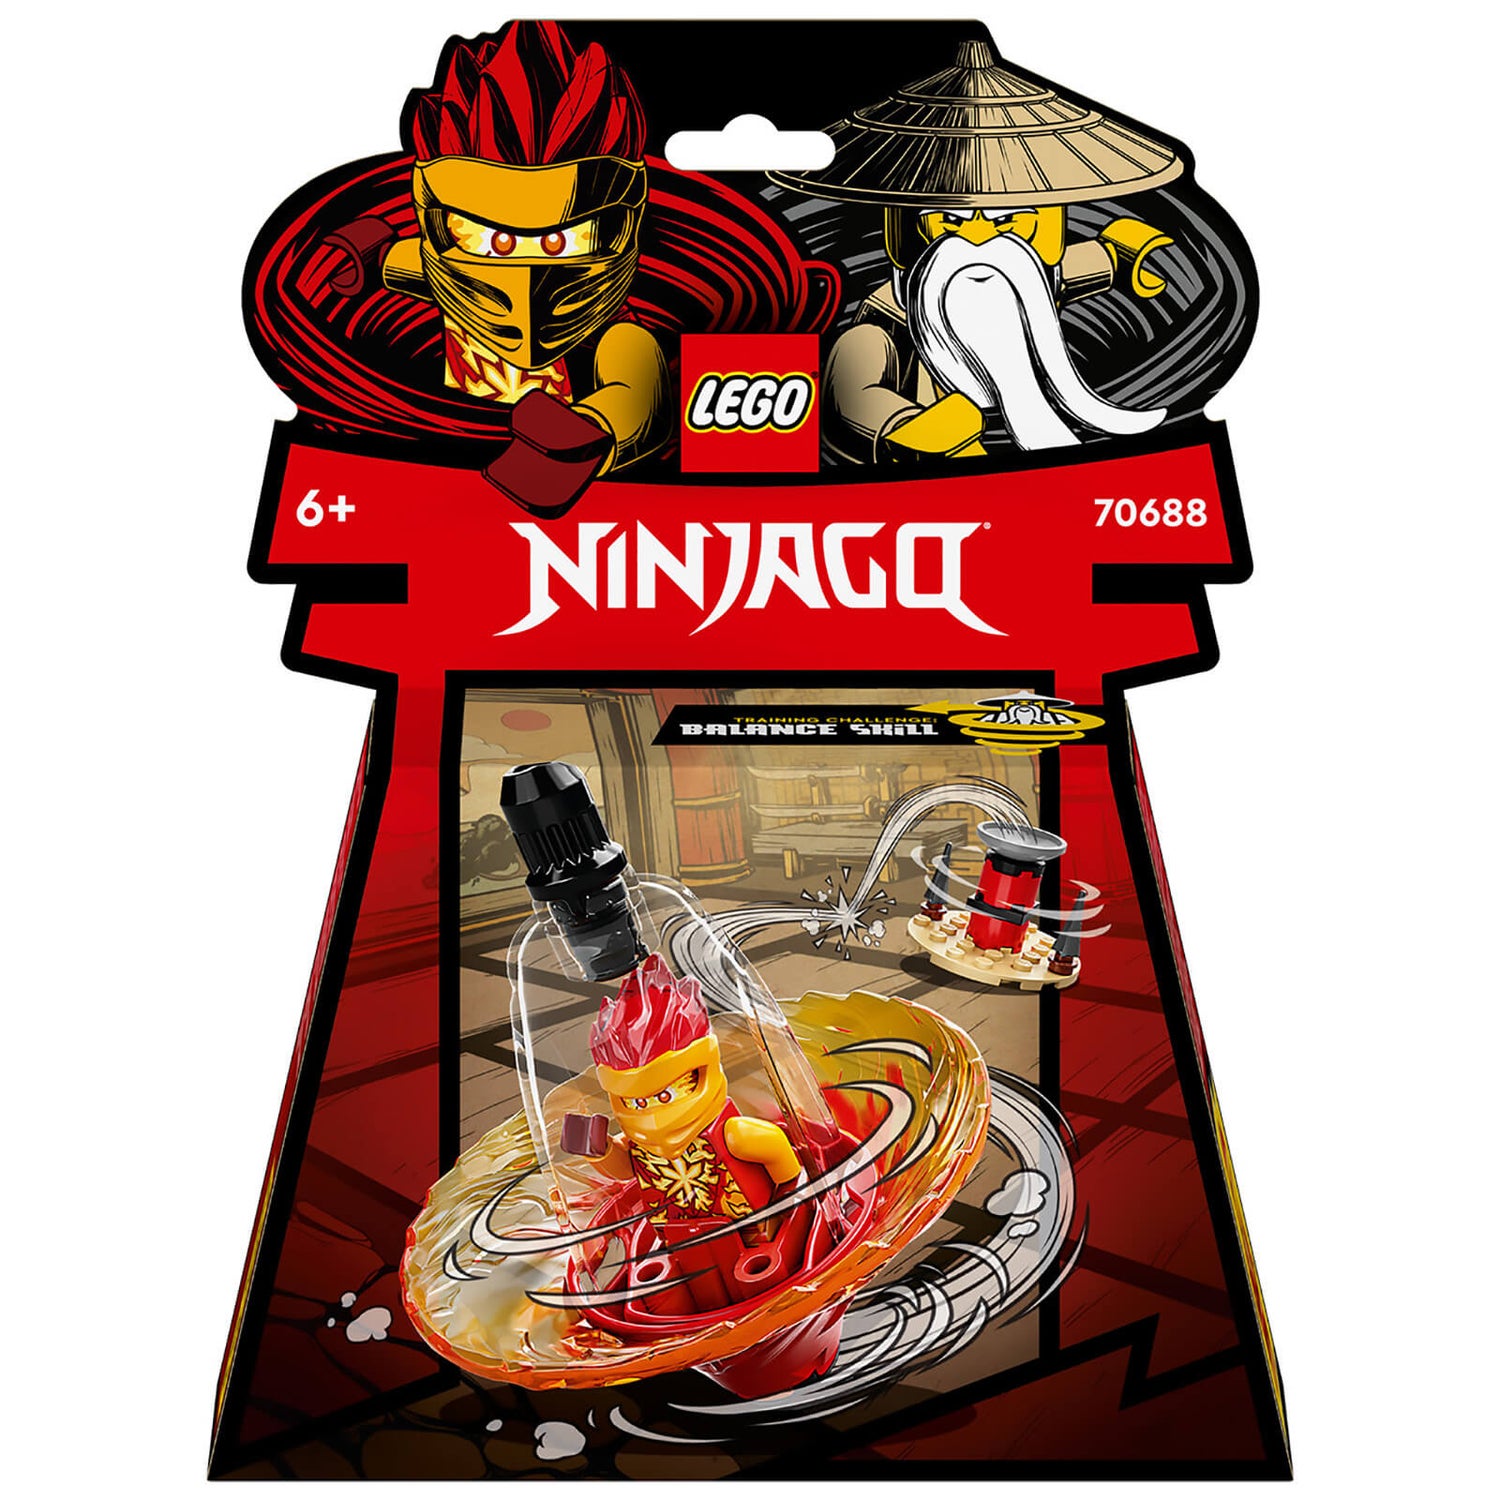 LEGO NINJAGO: Kai’s Spinjitzu Ninja Training Spin Toy (70688)